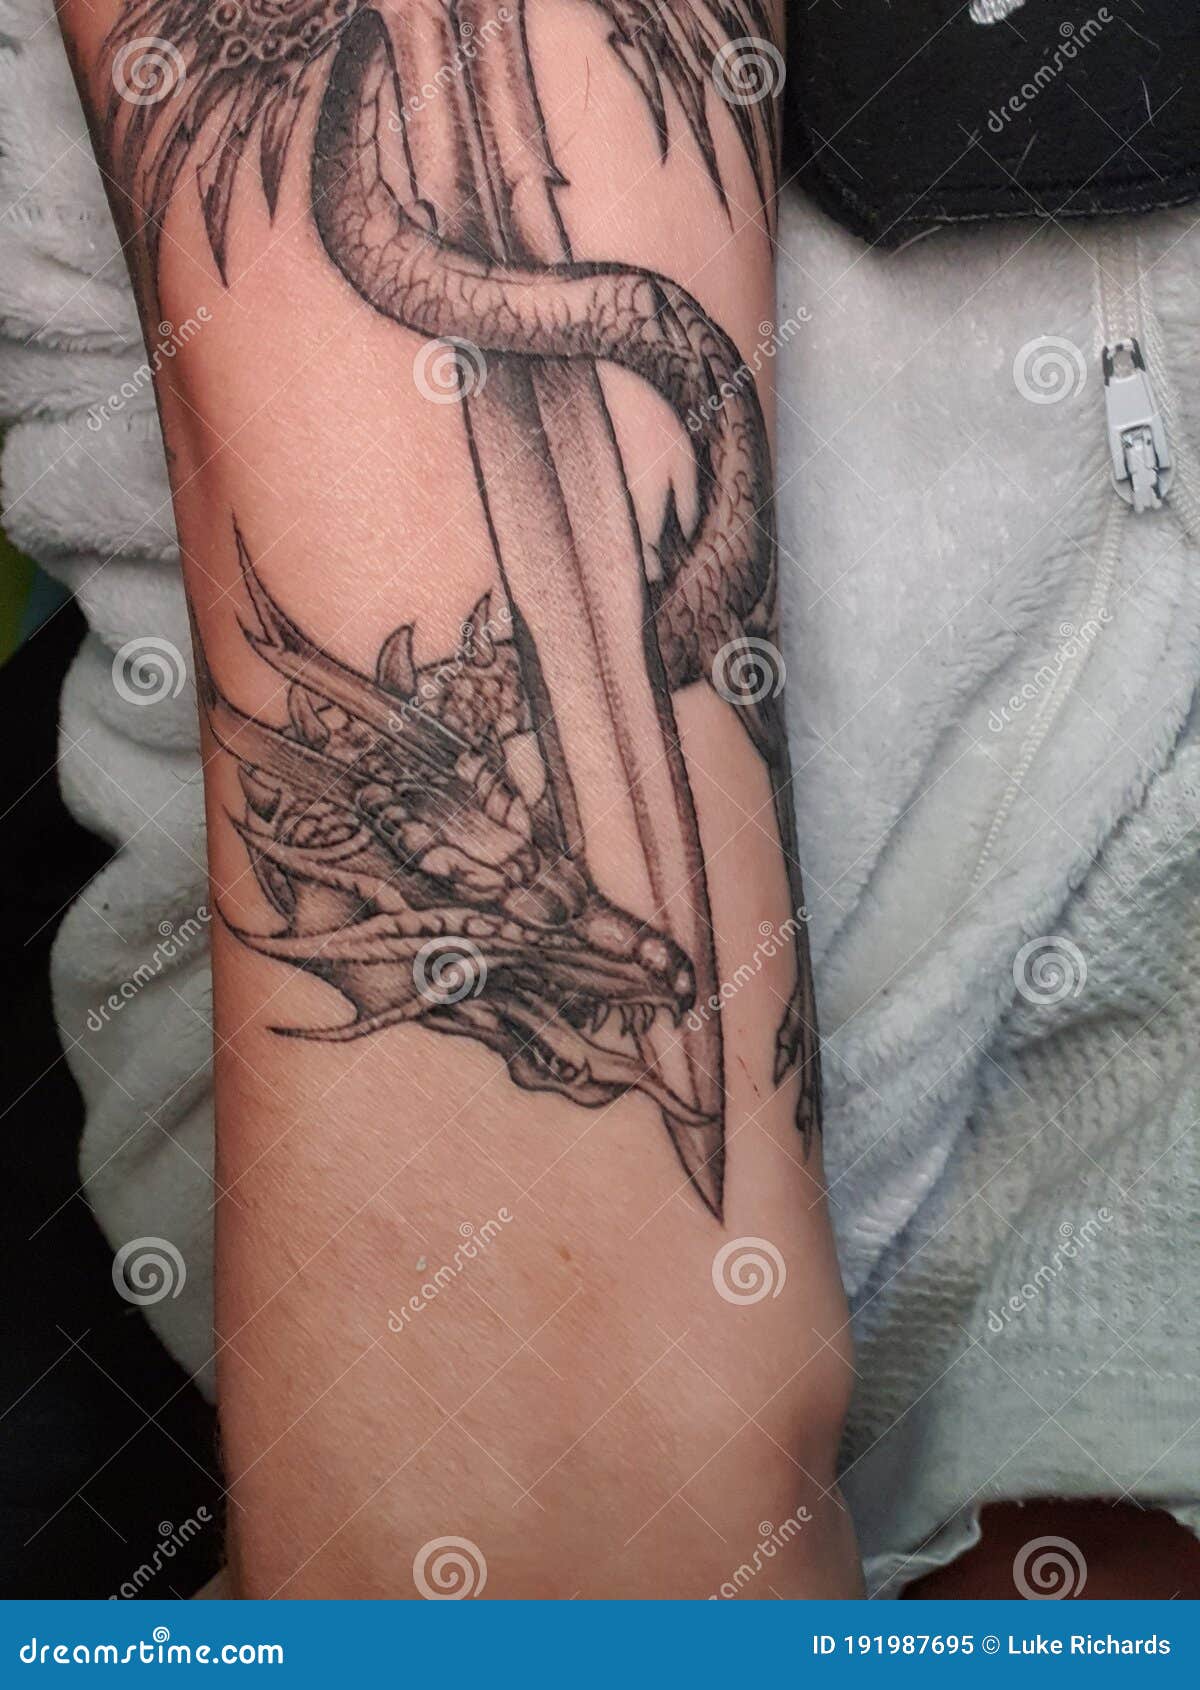 Sword Dragon Tattoo  Tattoo Design